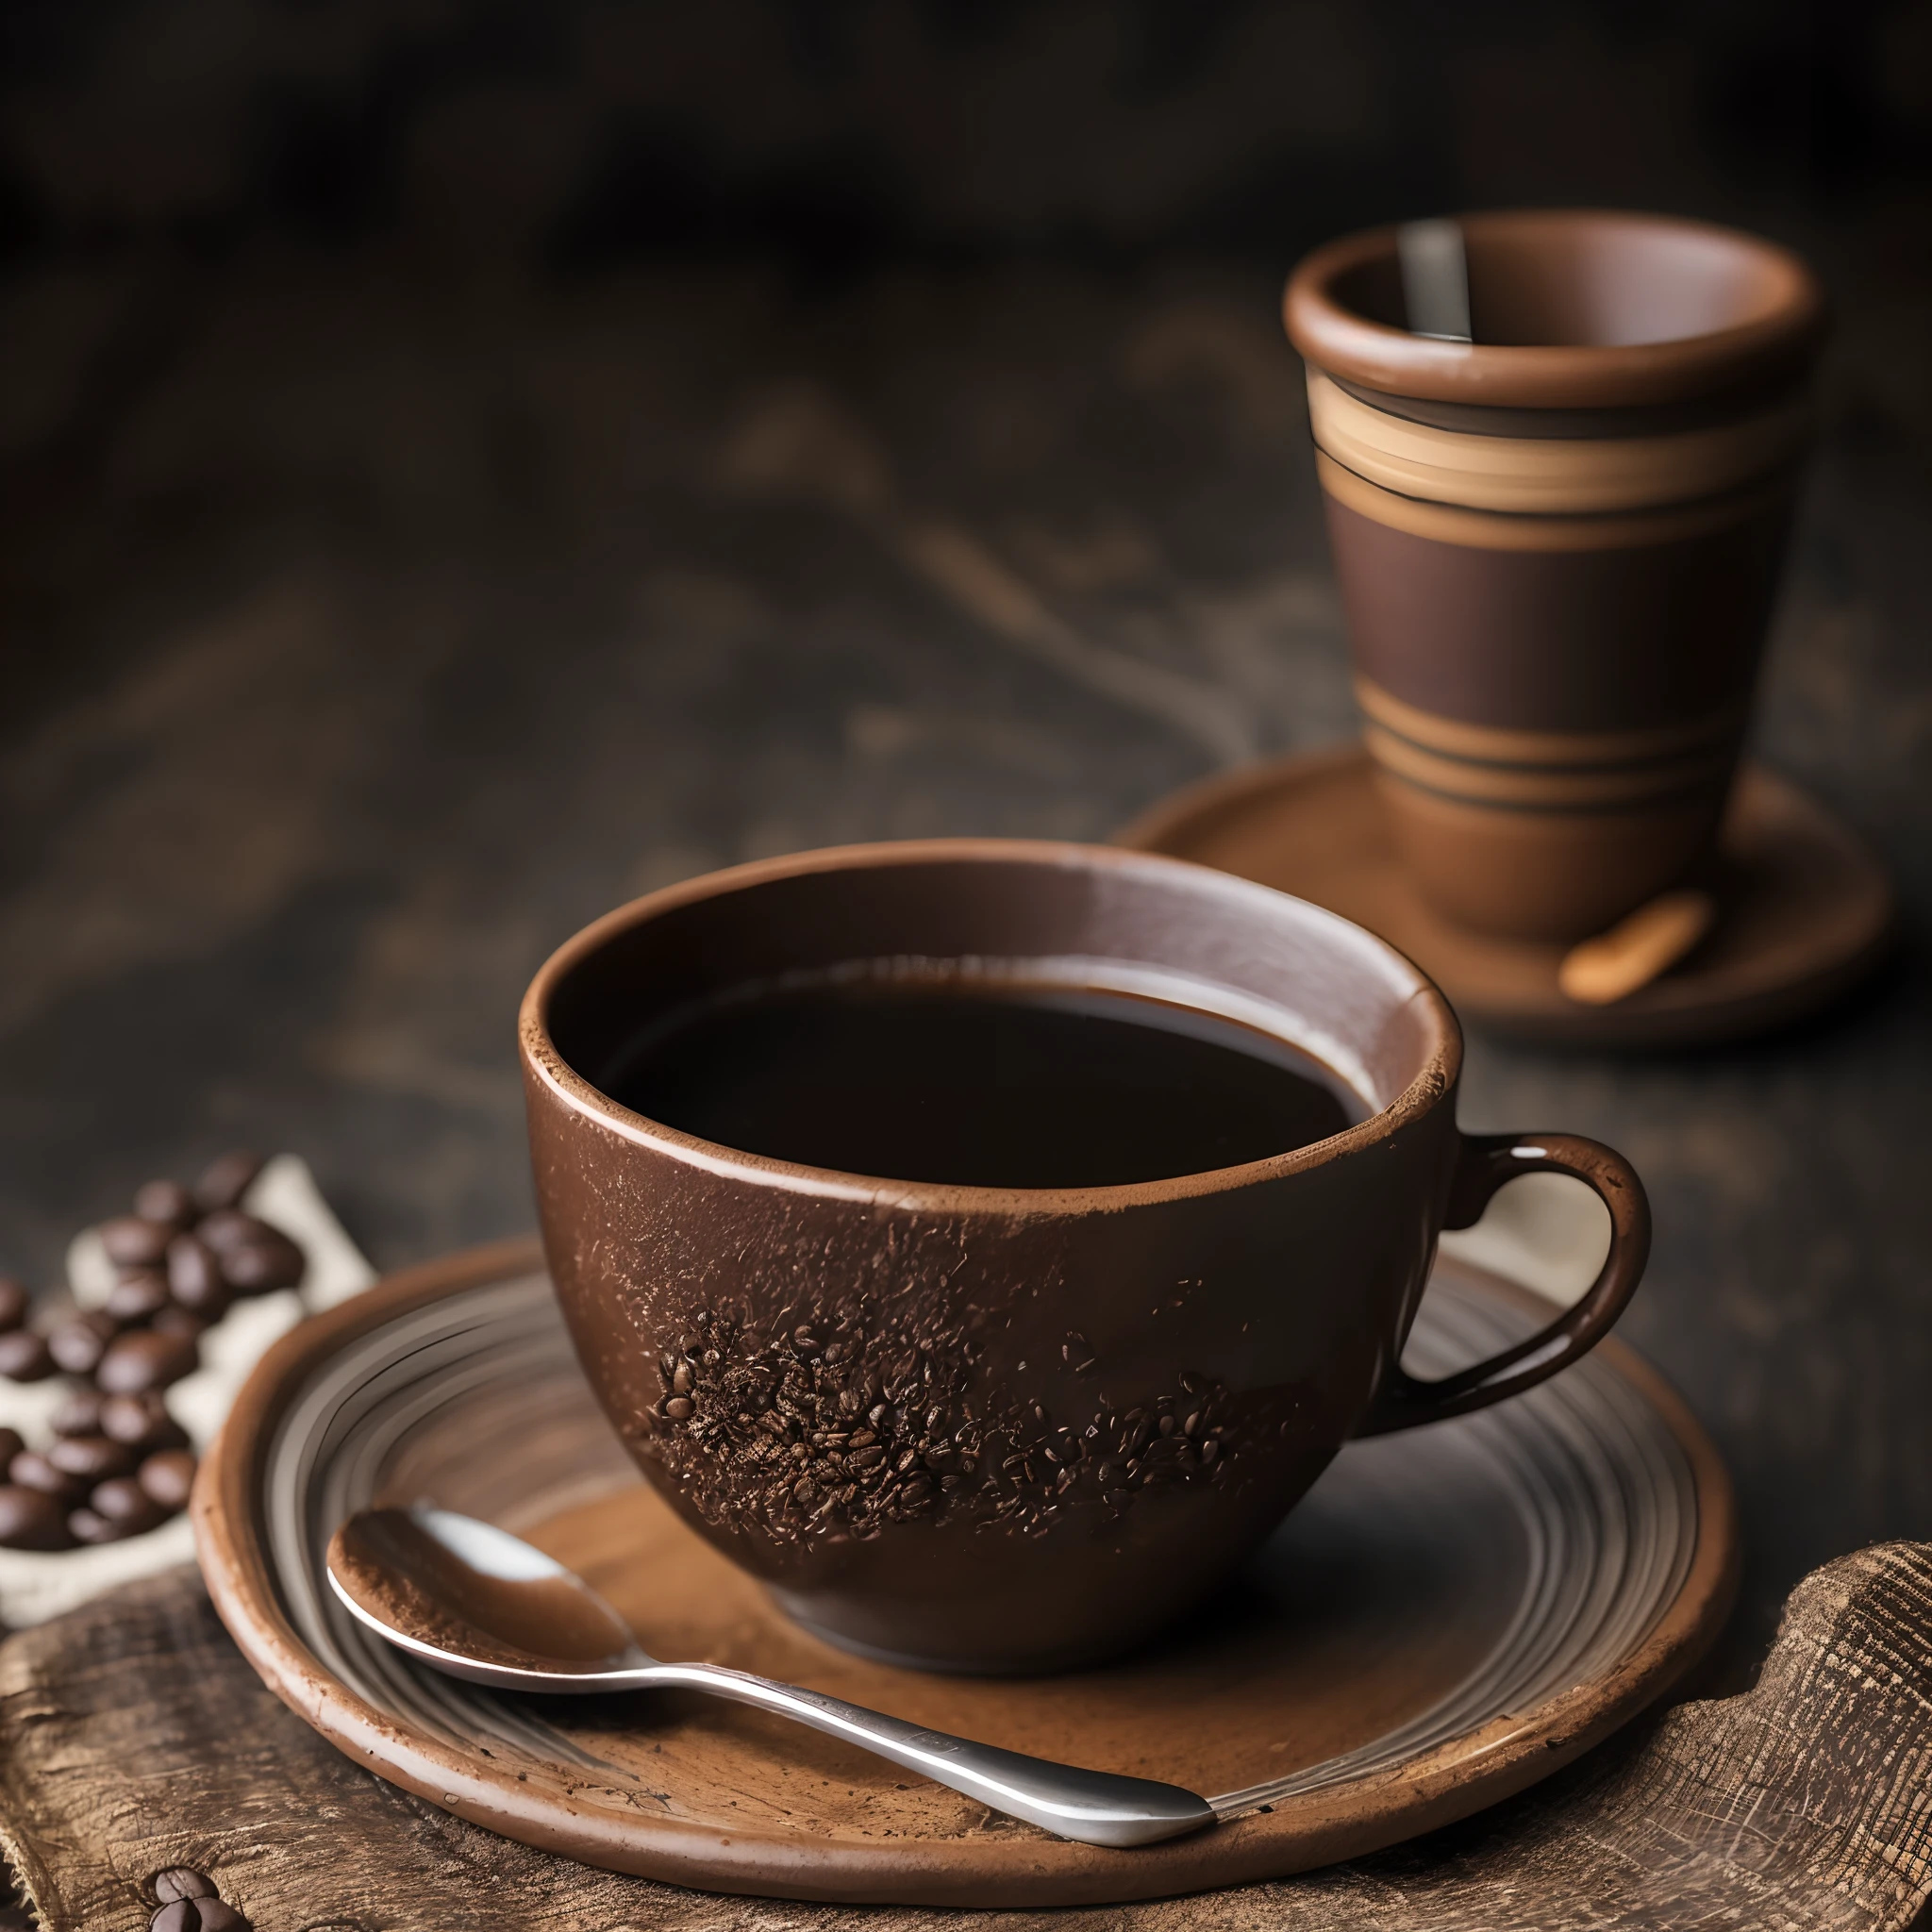 烘焙过的咖啡和咖啡豆铺在布上，配上一杯黏土咖啡，烟雾缭绕，用 35mm HDR 超逼真微距相机拍摄